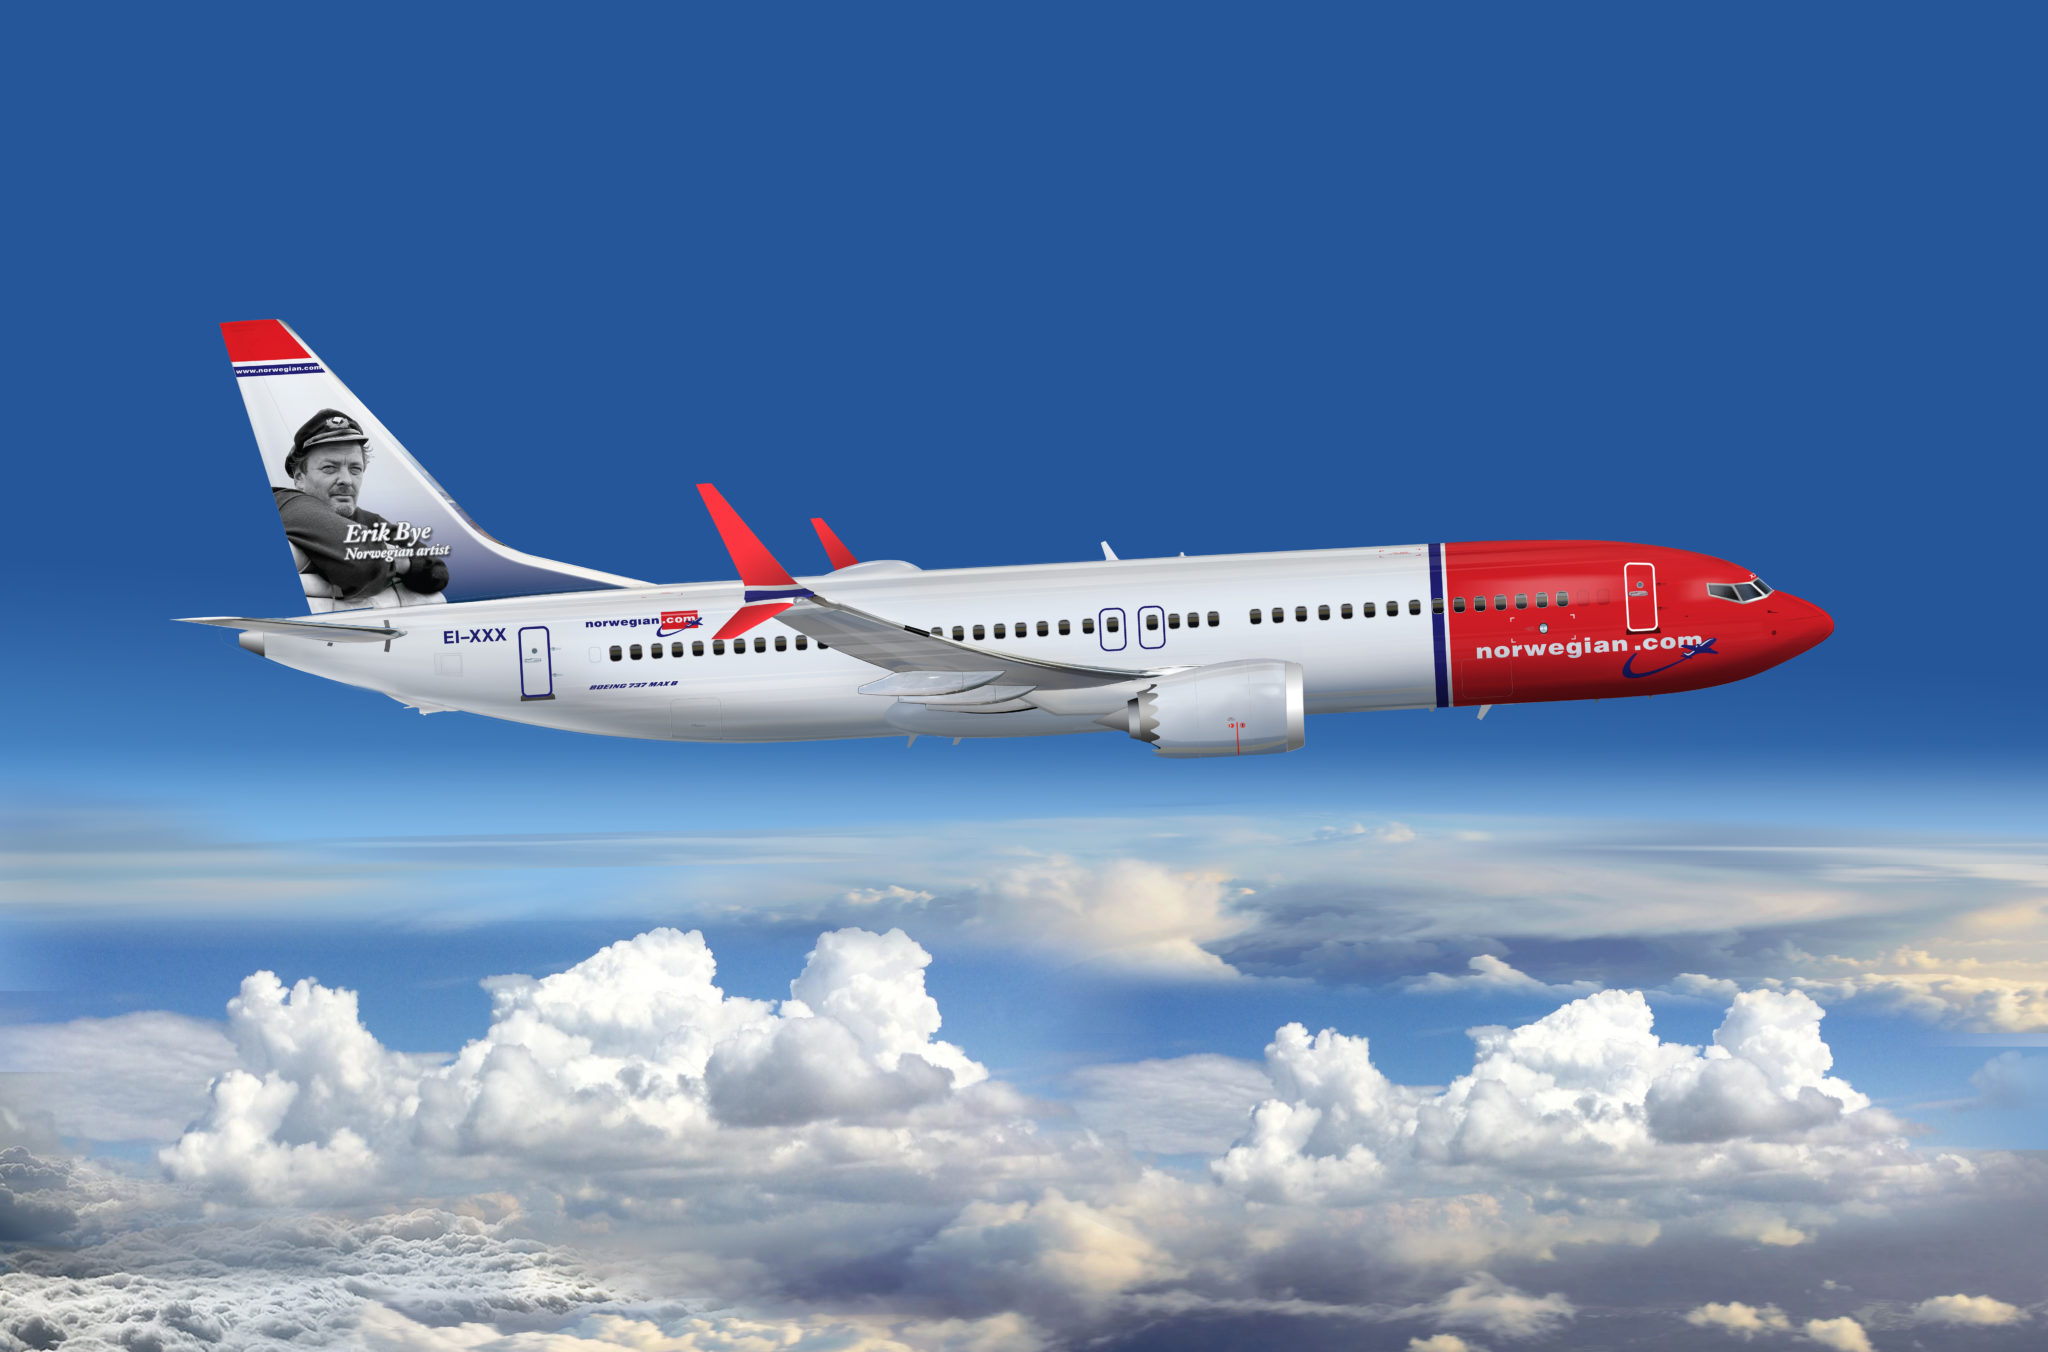 A companhia aérea de baixo custo Norwegian Air